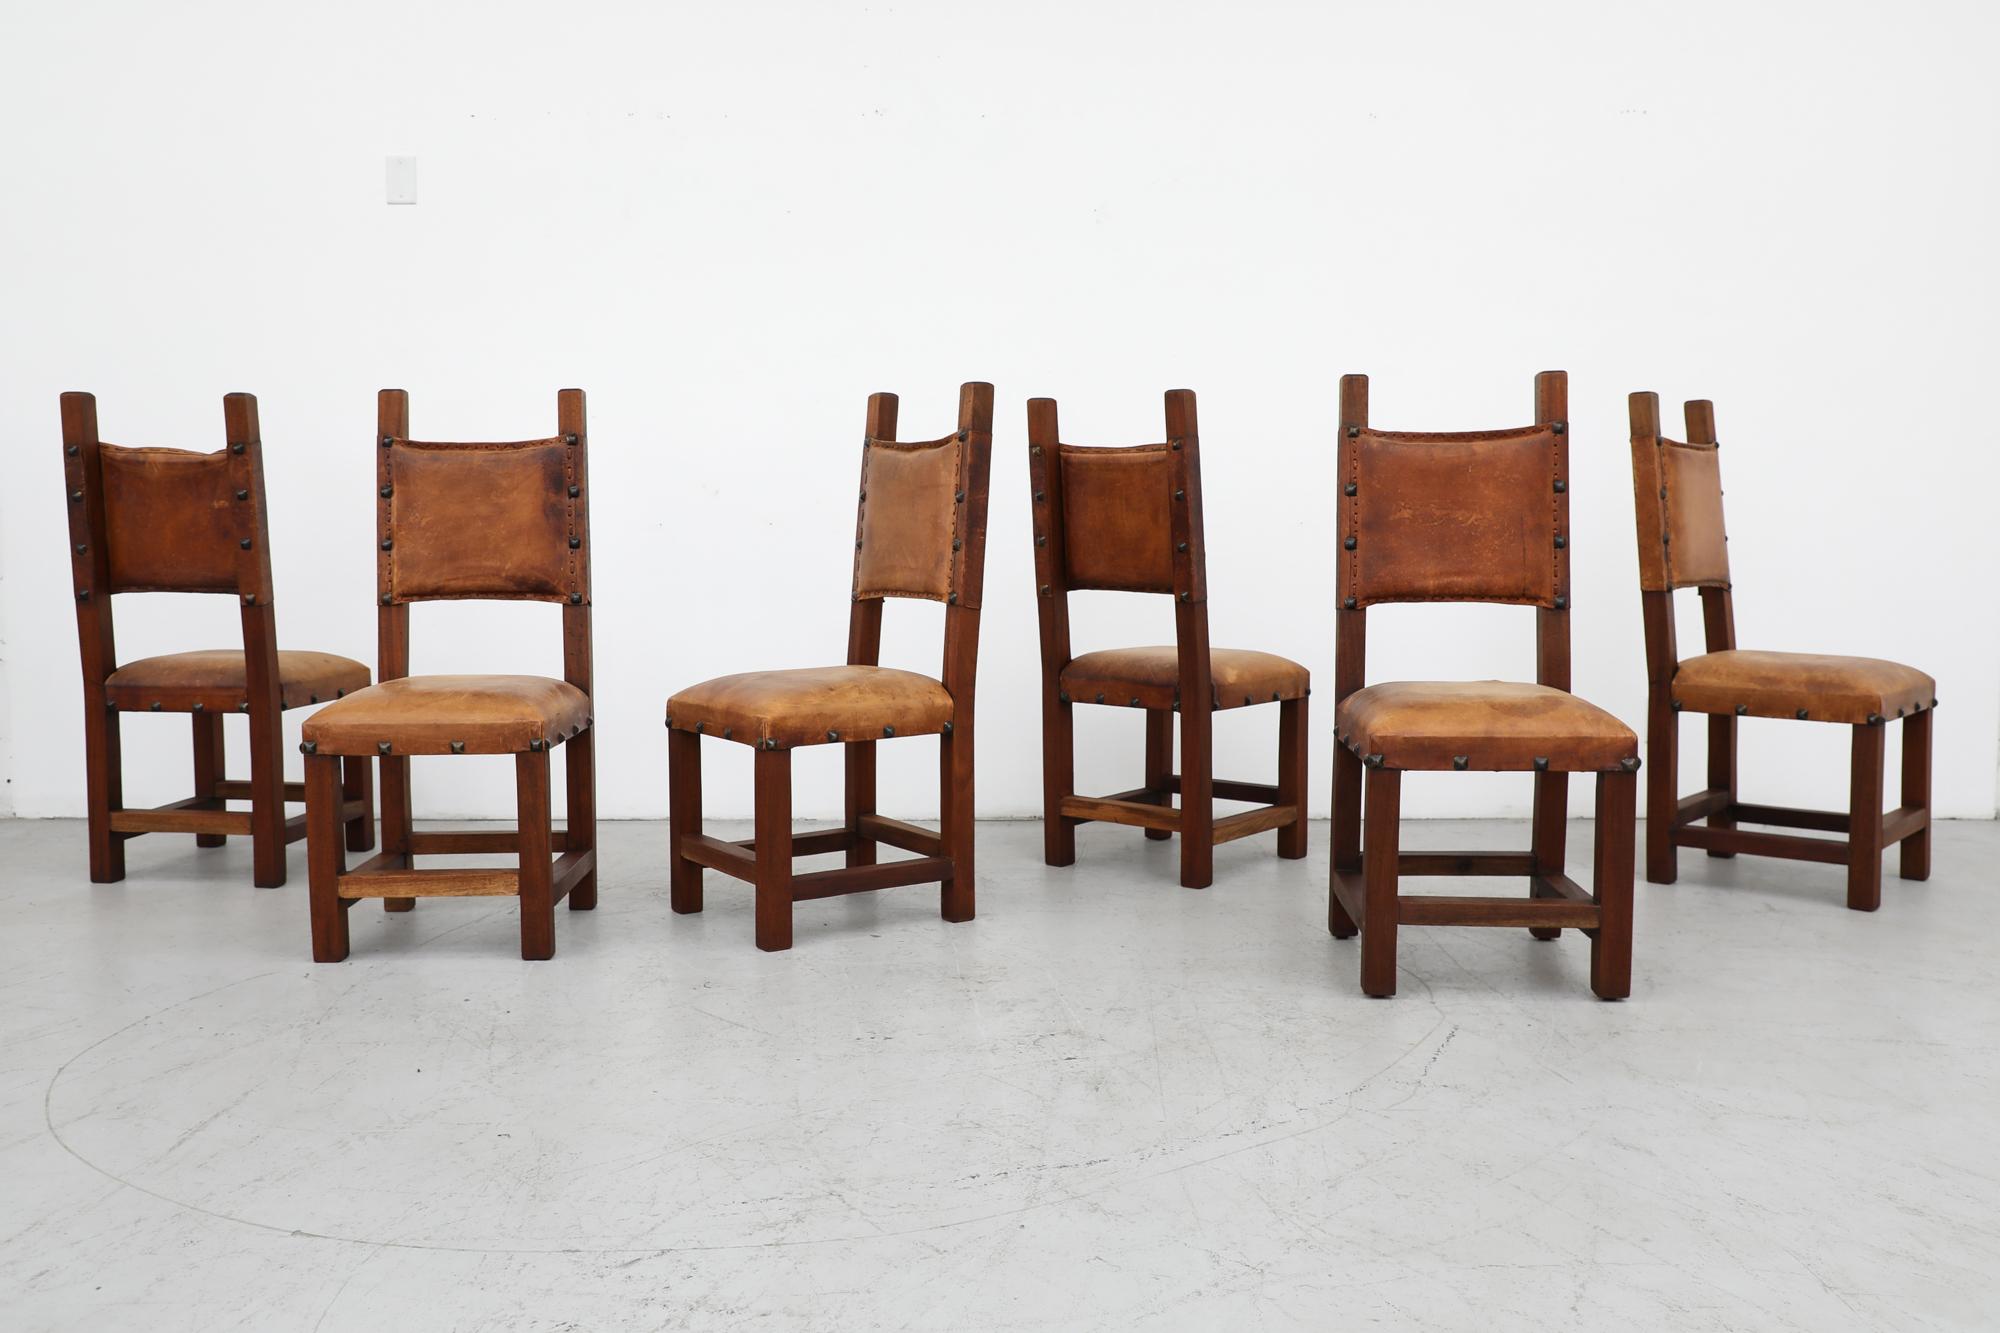 6 Esszimmerstühle im spanischen Brutalismus-Stil aus der Jahrhundertmitte. Sitz und Rückenlehne aus Leder ruhen auf einem schweren Holzrahmen mit Ledergeflecht und Eisenpyramidennieten als Akzente. In beeindruckendem Originalzustand mit einigen